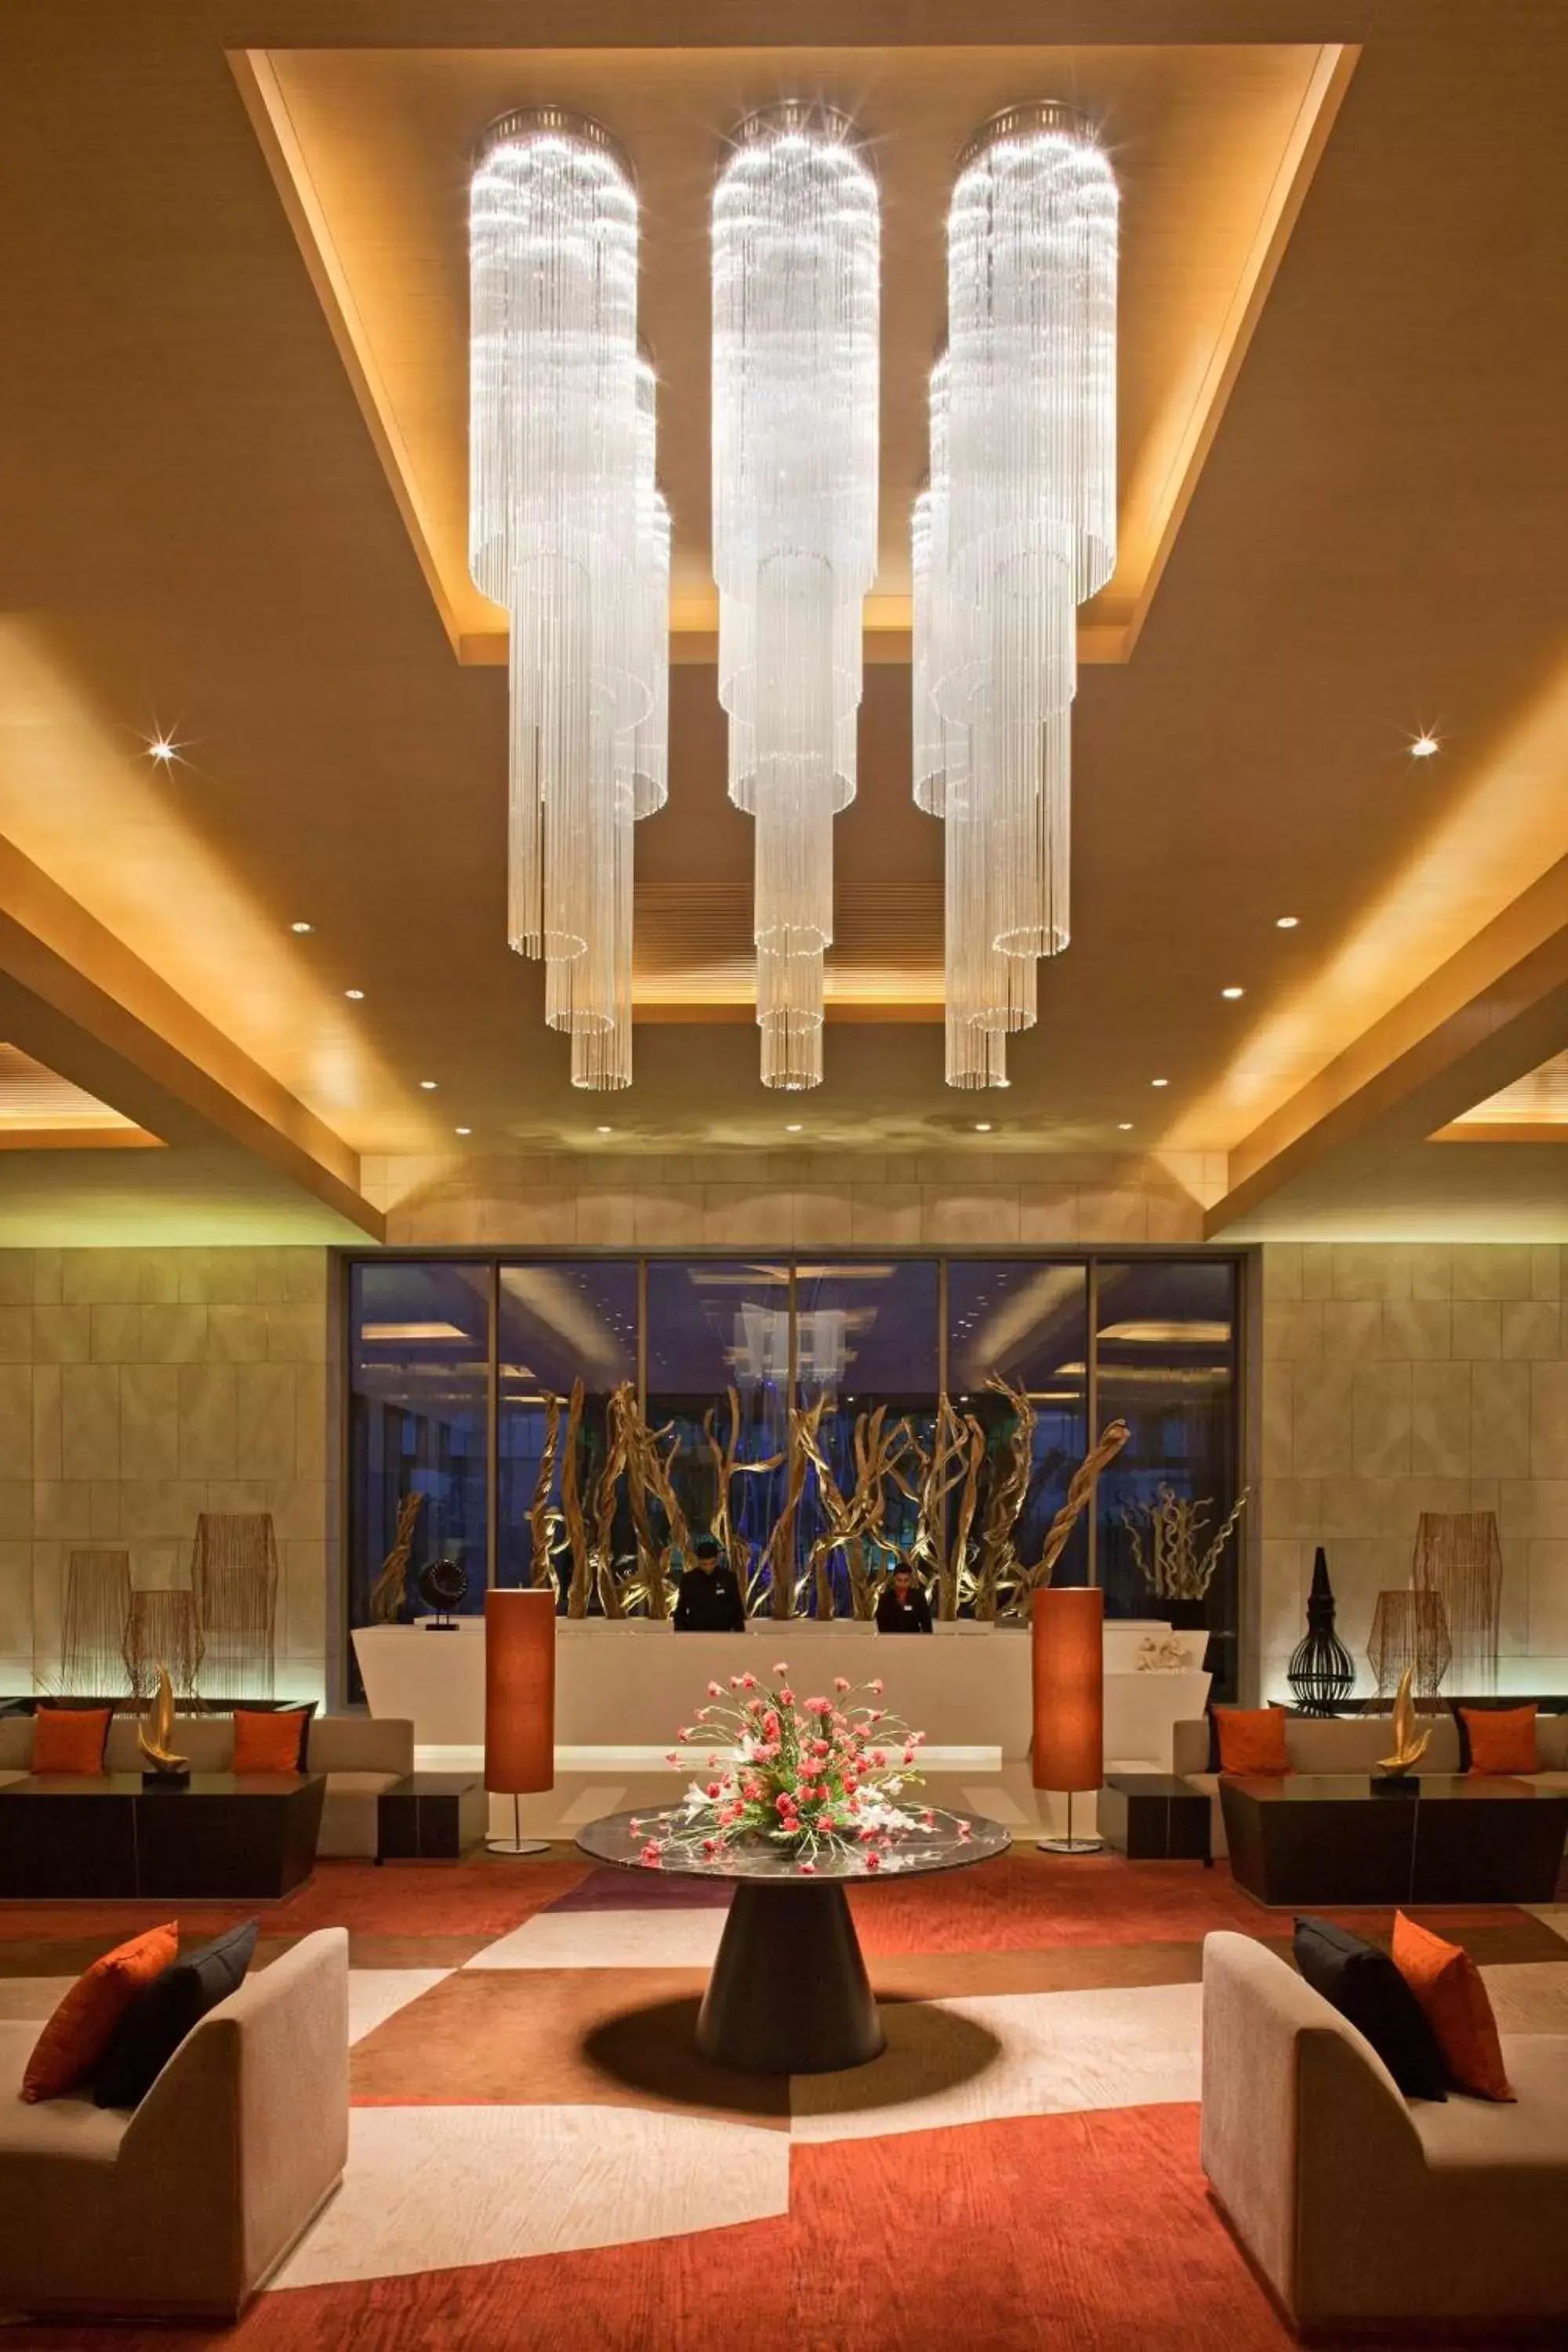 Lobby or reception in Radisson Blu Hotel Amritsar